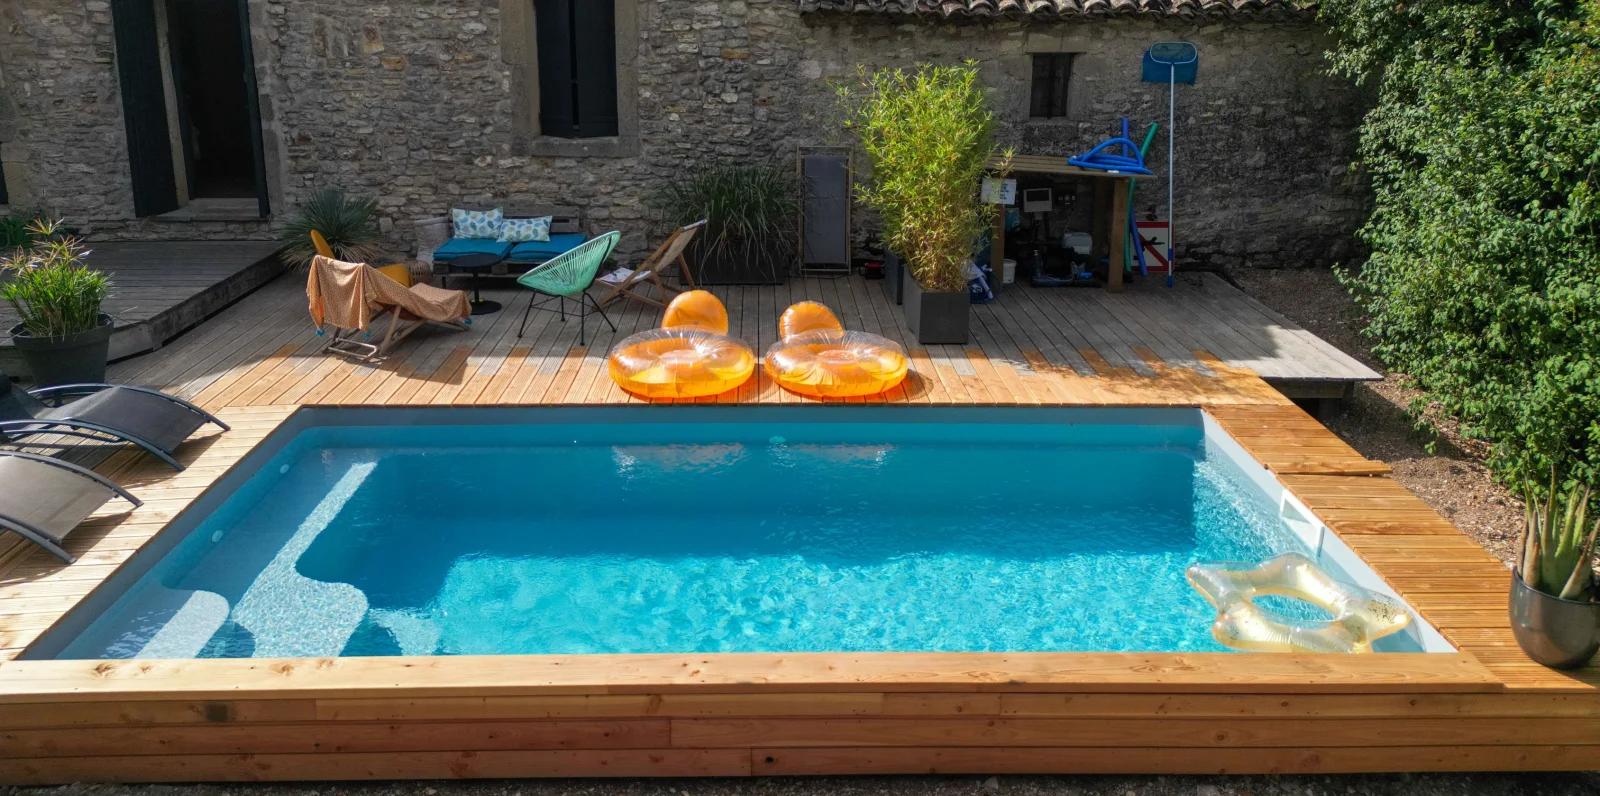 Espacio Gran casa de piedra occitana con piscina - 4